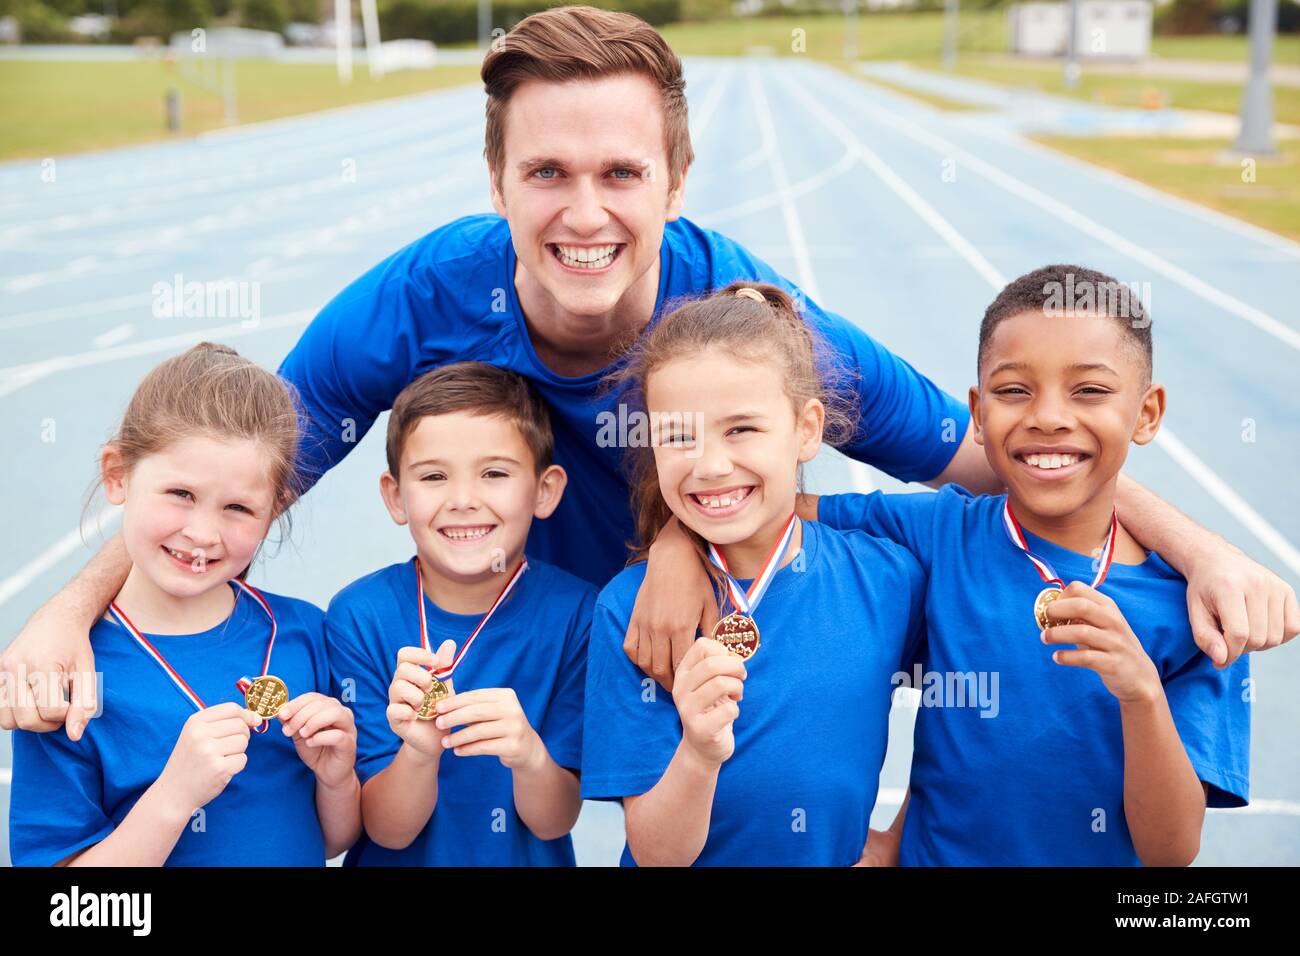 Ritratto di bambini con pullman maschio di mostrare a tutti i vincitori di medaglie sulla giornata di sport Foto Stock